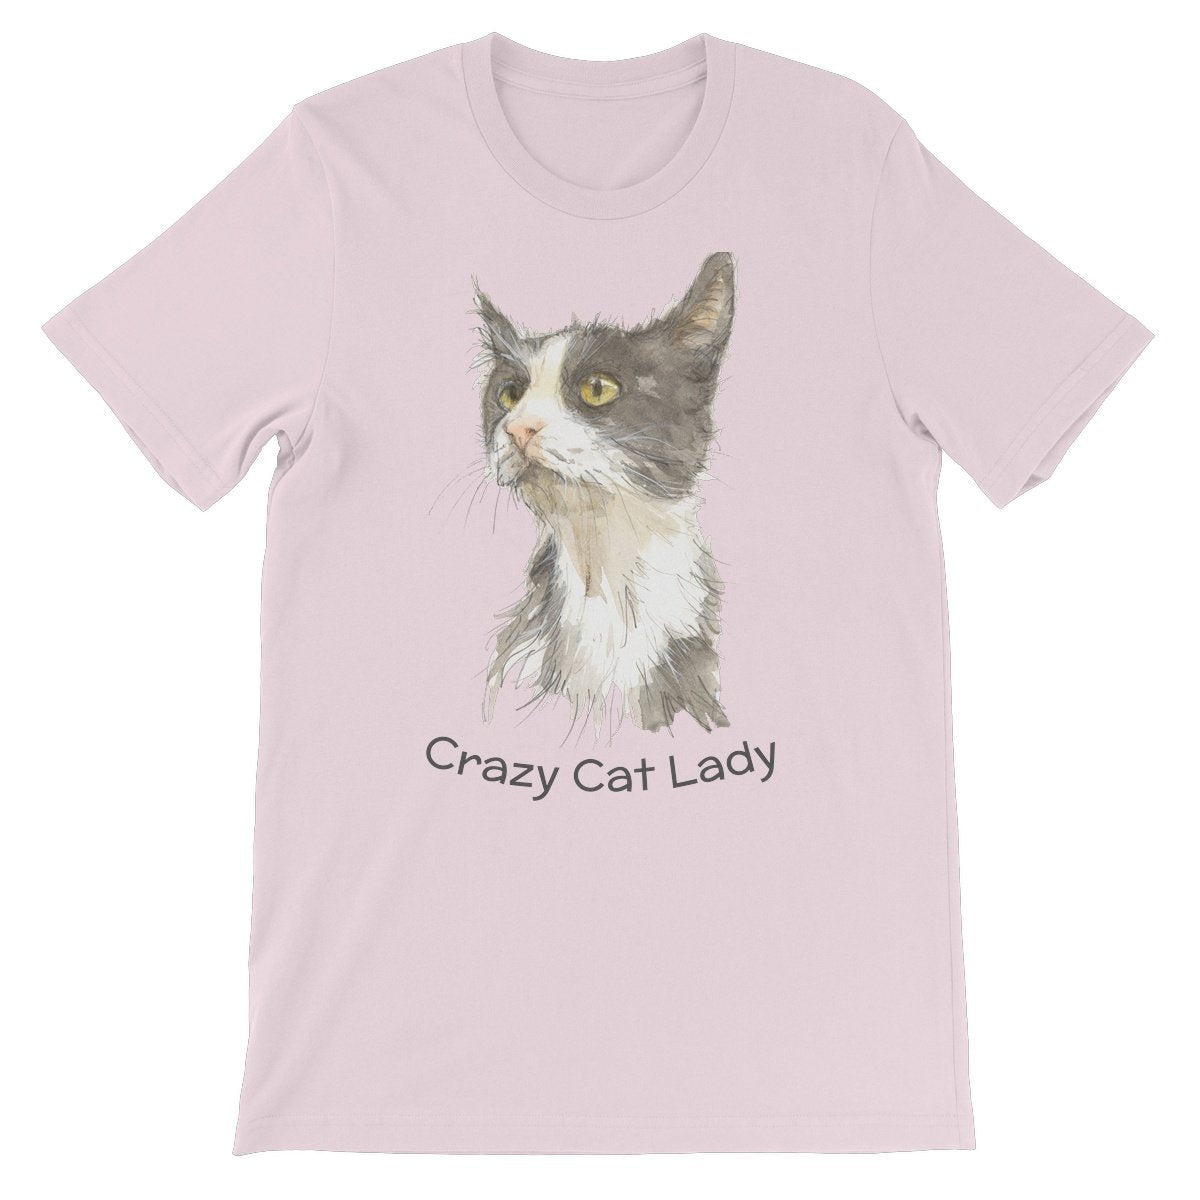 Unisex Premium T-Shirt - 'Crazy Cat Lady'